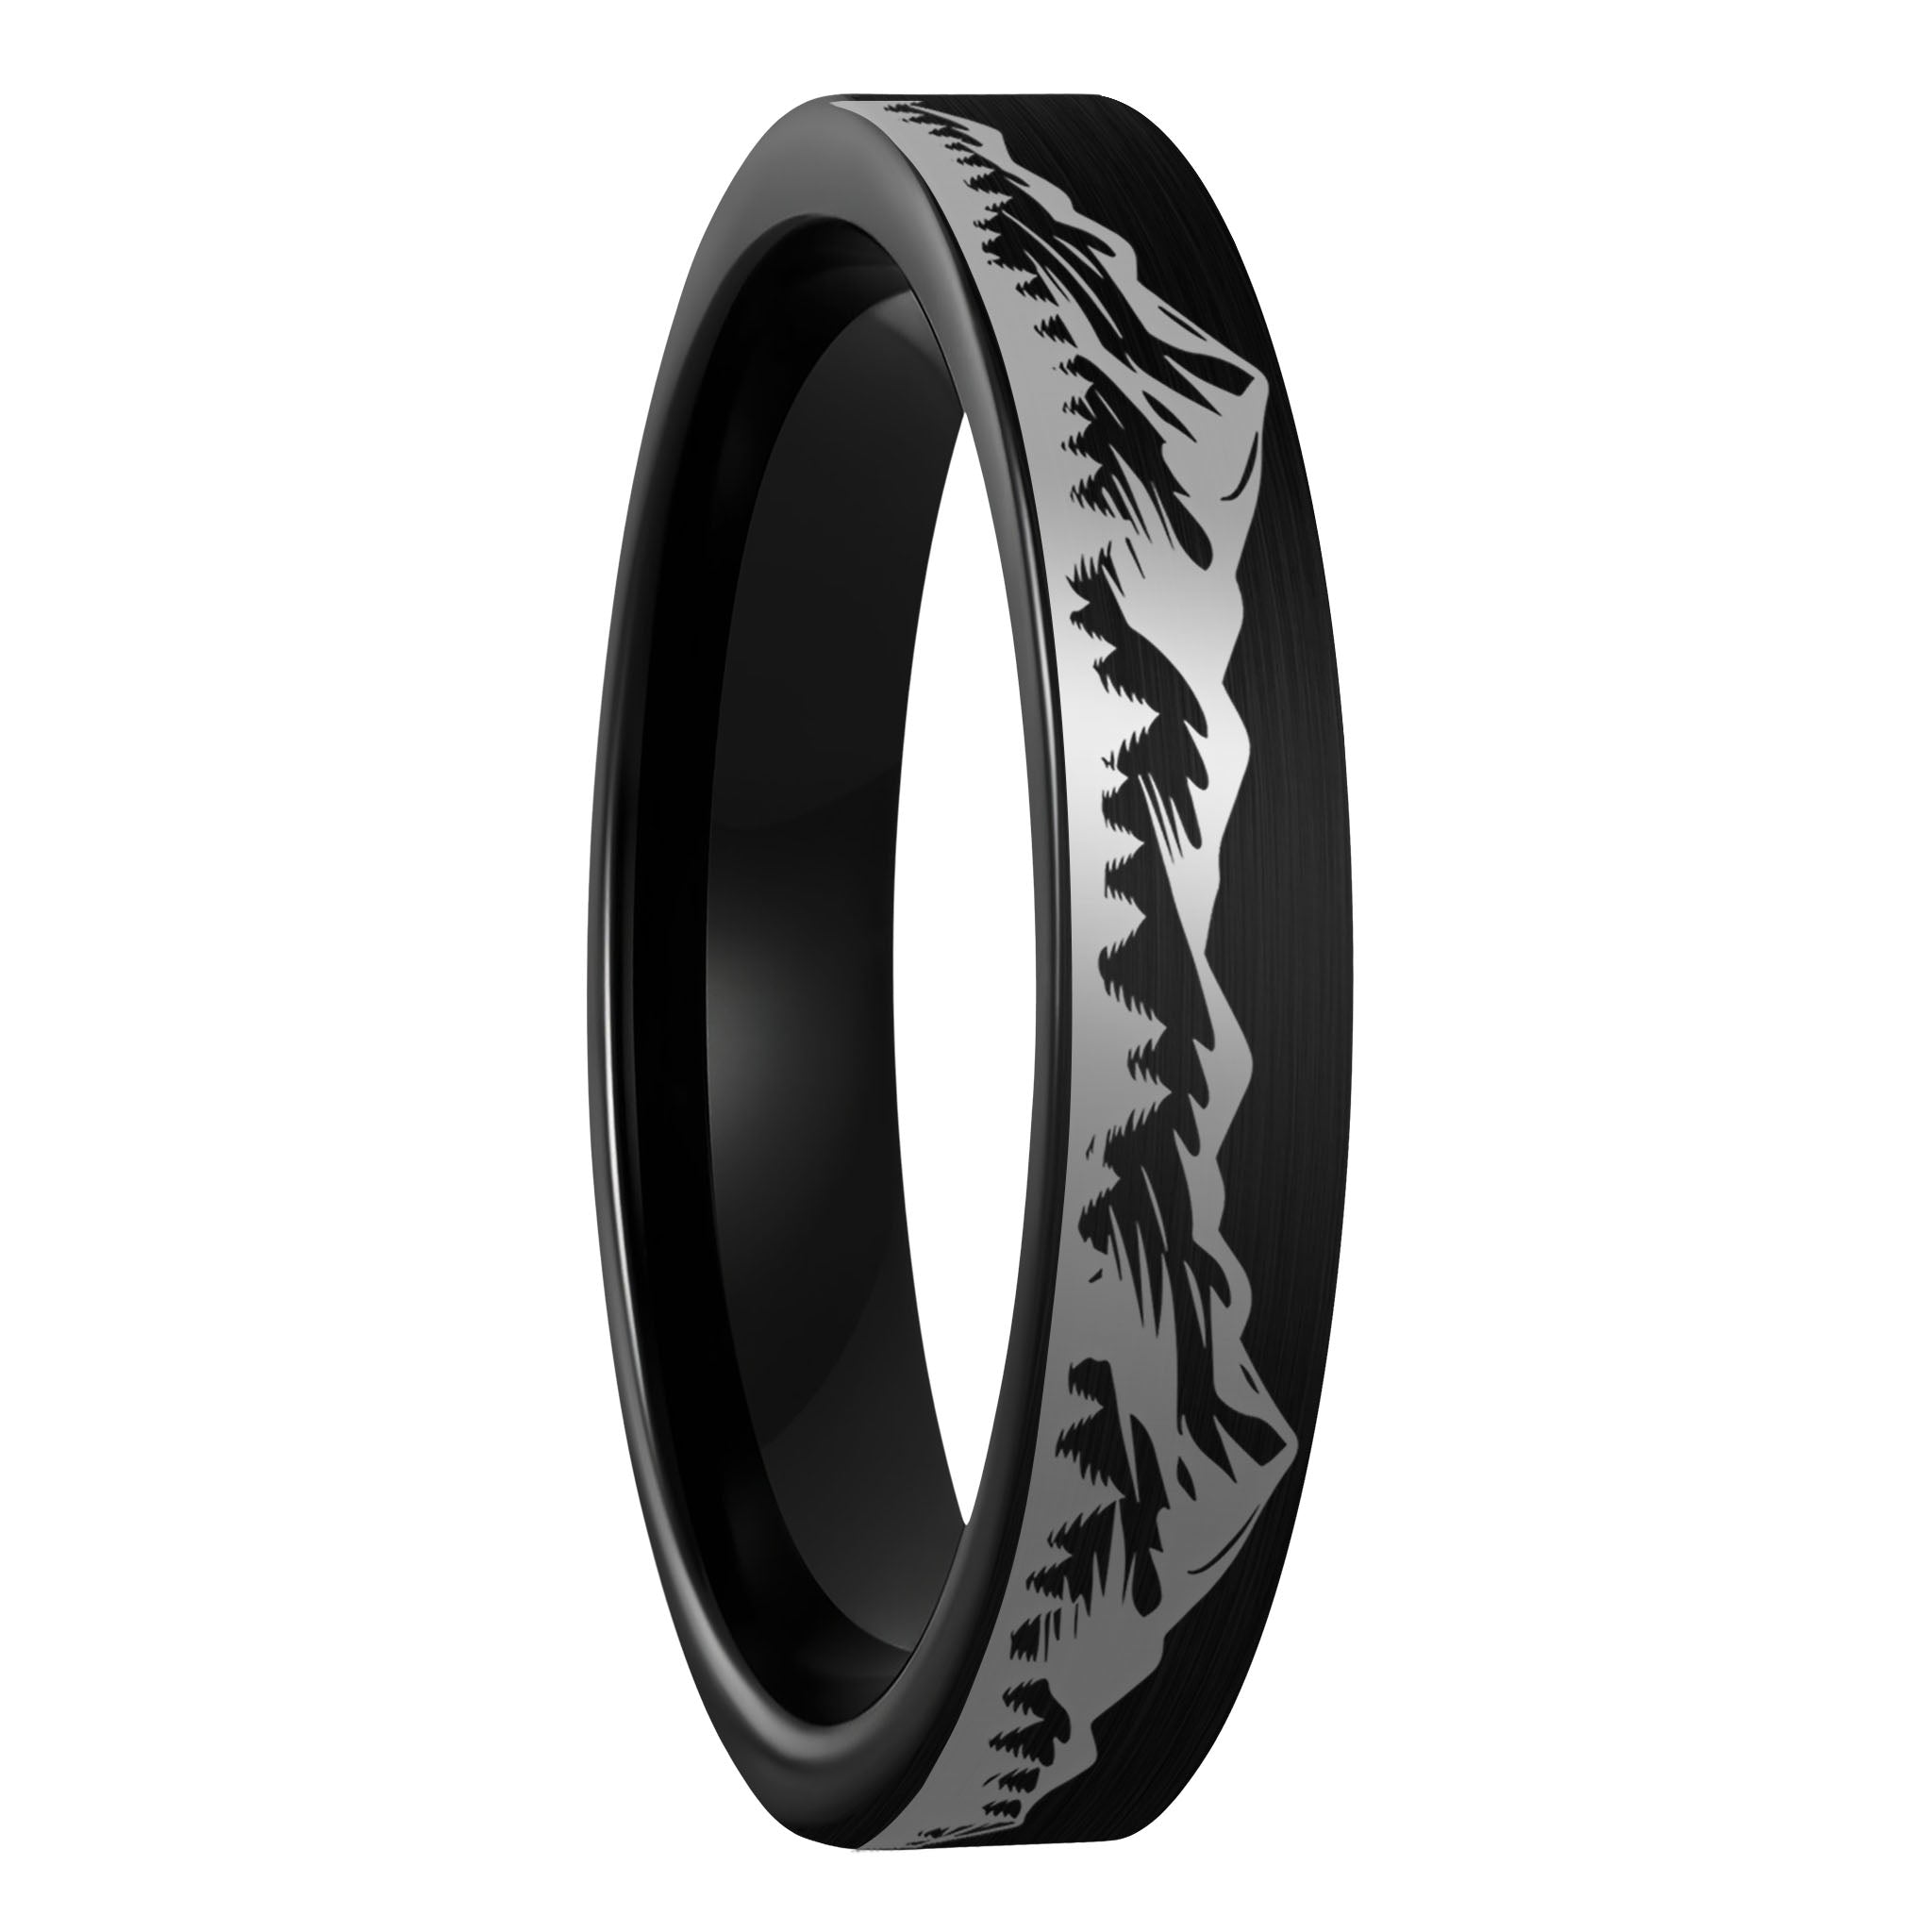 Buy Black Titanium Ring Online In India - Etsy India